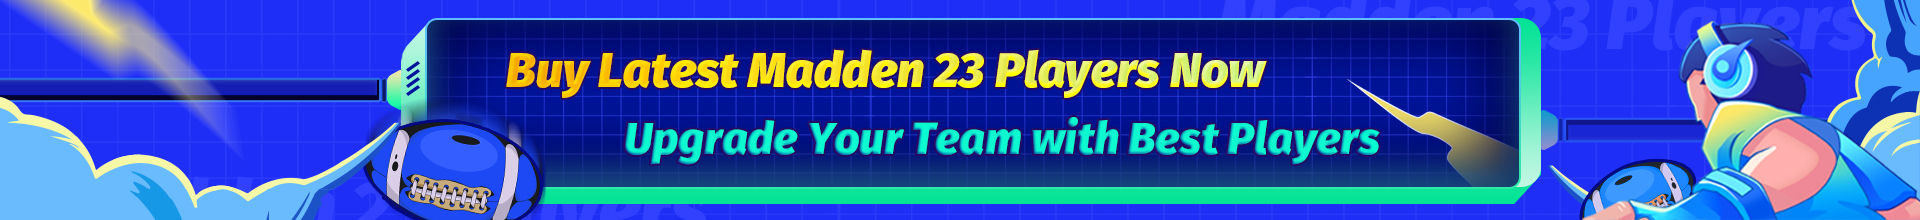 MUT 23 Players